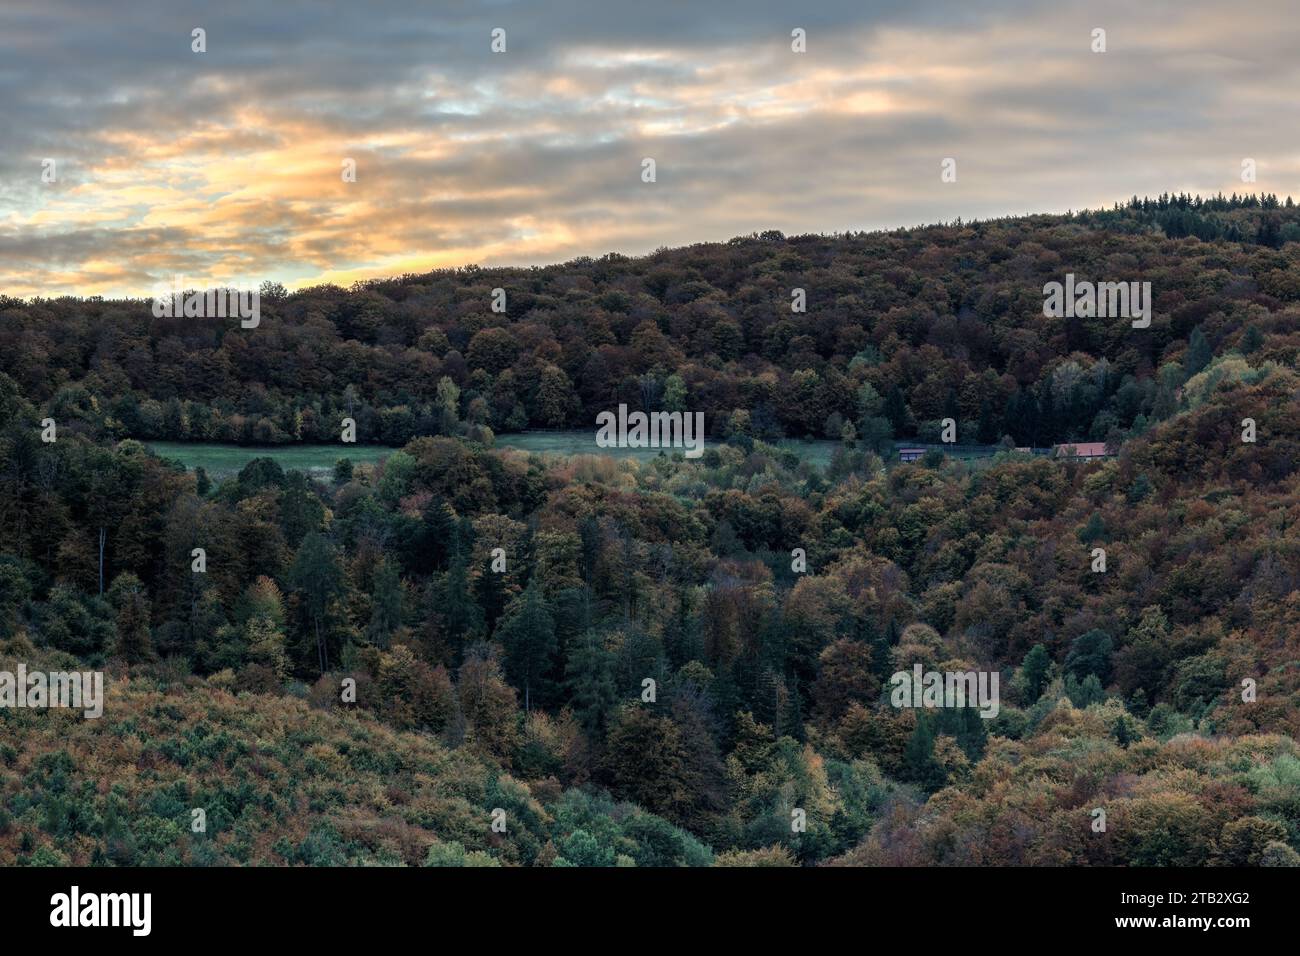 Herbstliche Berglandschaft mit Wald und wunderschönem farbenfrohen Himmel bei Sonnenuntergang. Mit einem einsamen Haus. Horna Suca, Dubrava Slowakei Stockfoto